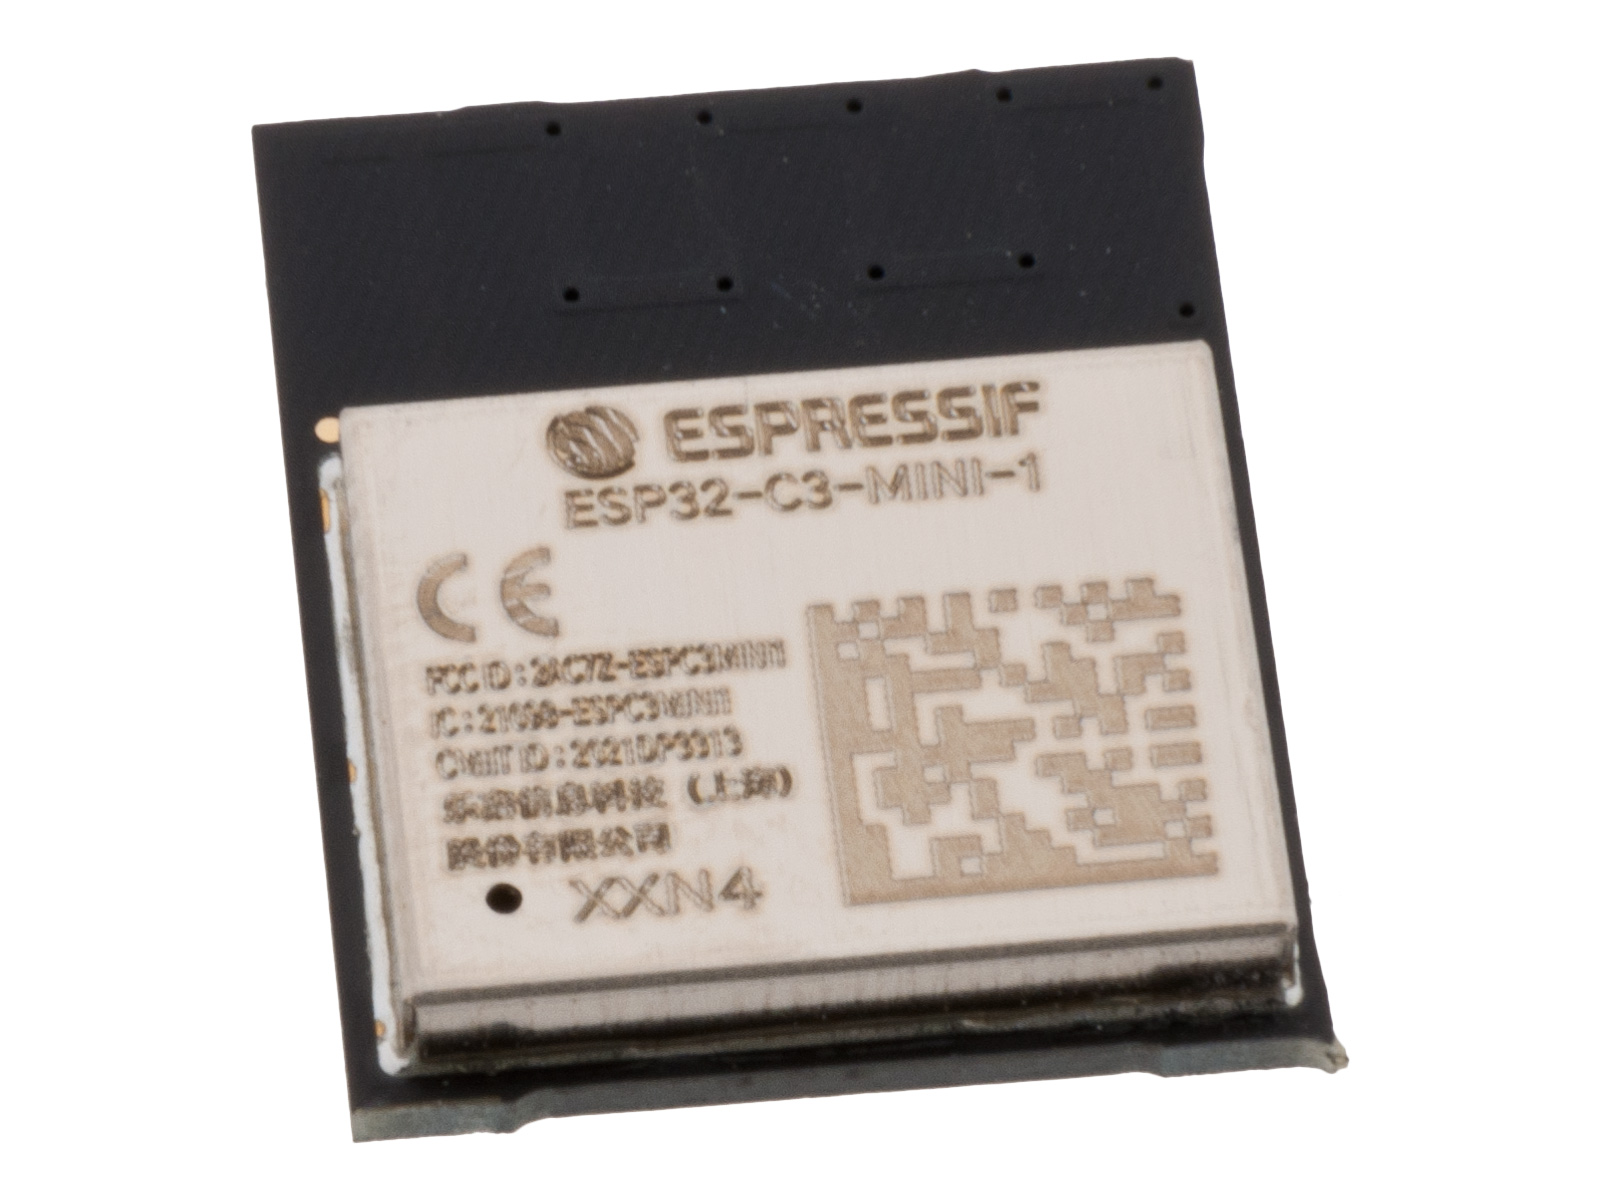 ESP32-C3-MINI-1-N4 RISC-V WIFI/BLE Modul @ electrokit (1 av 2)